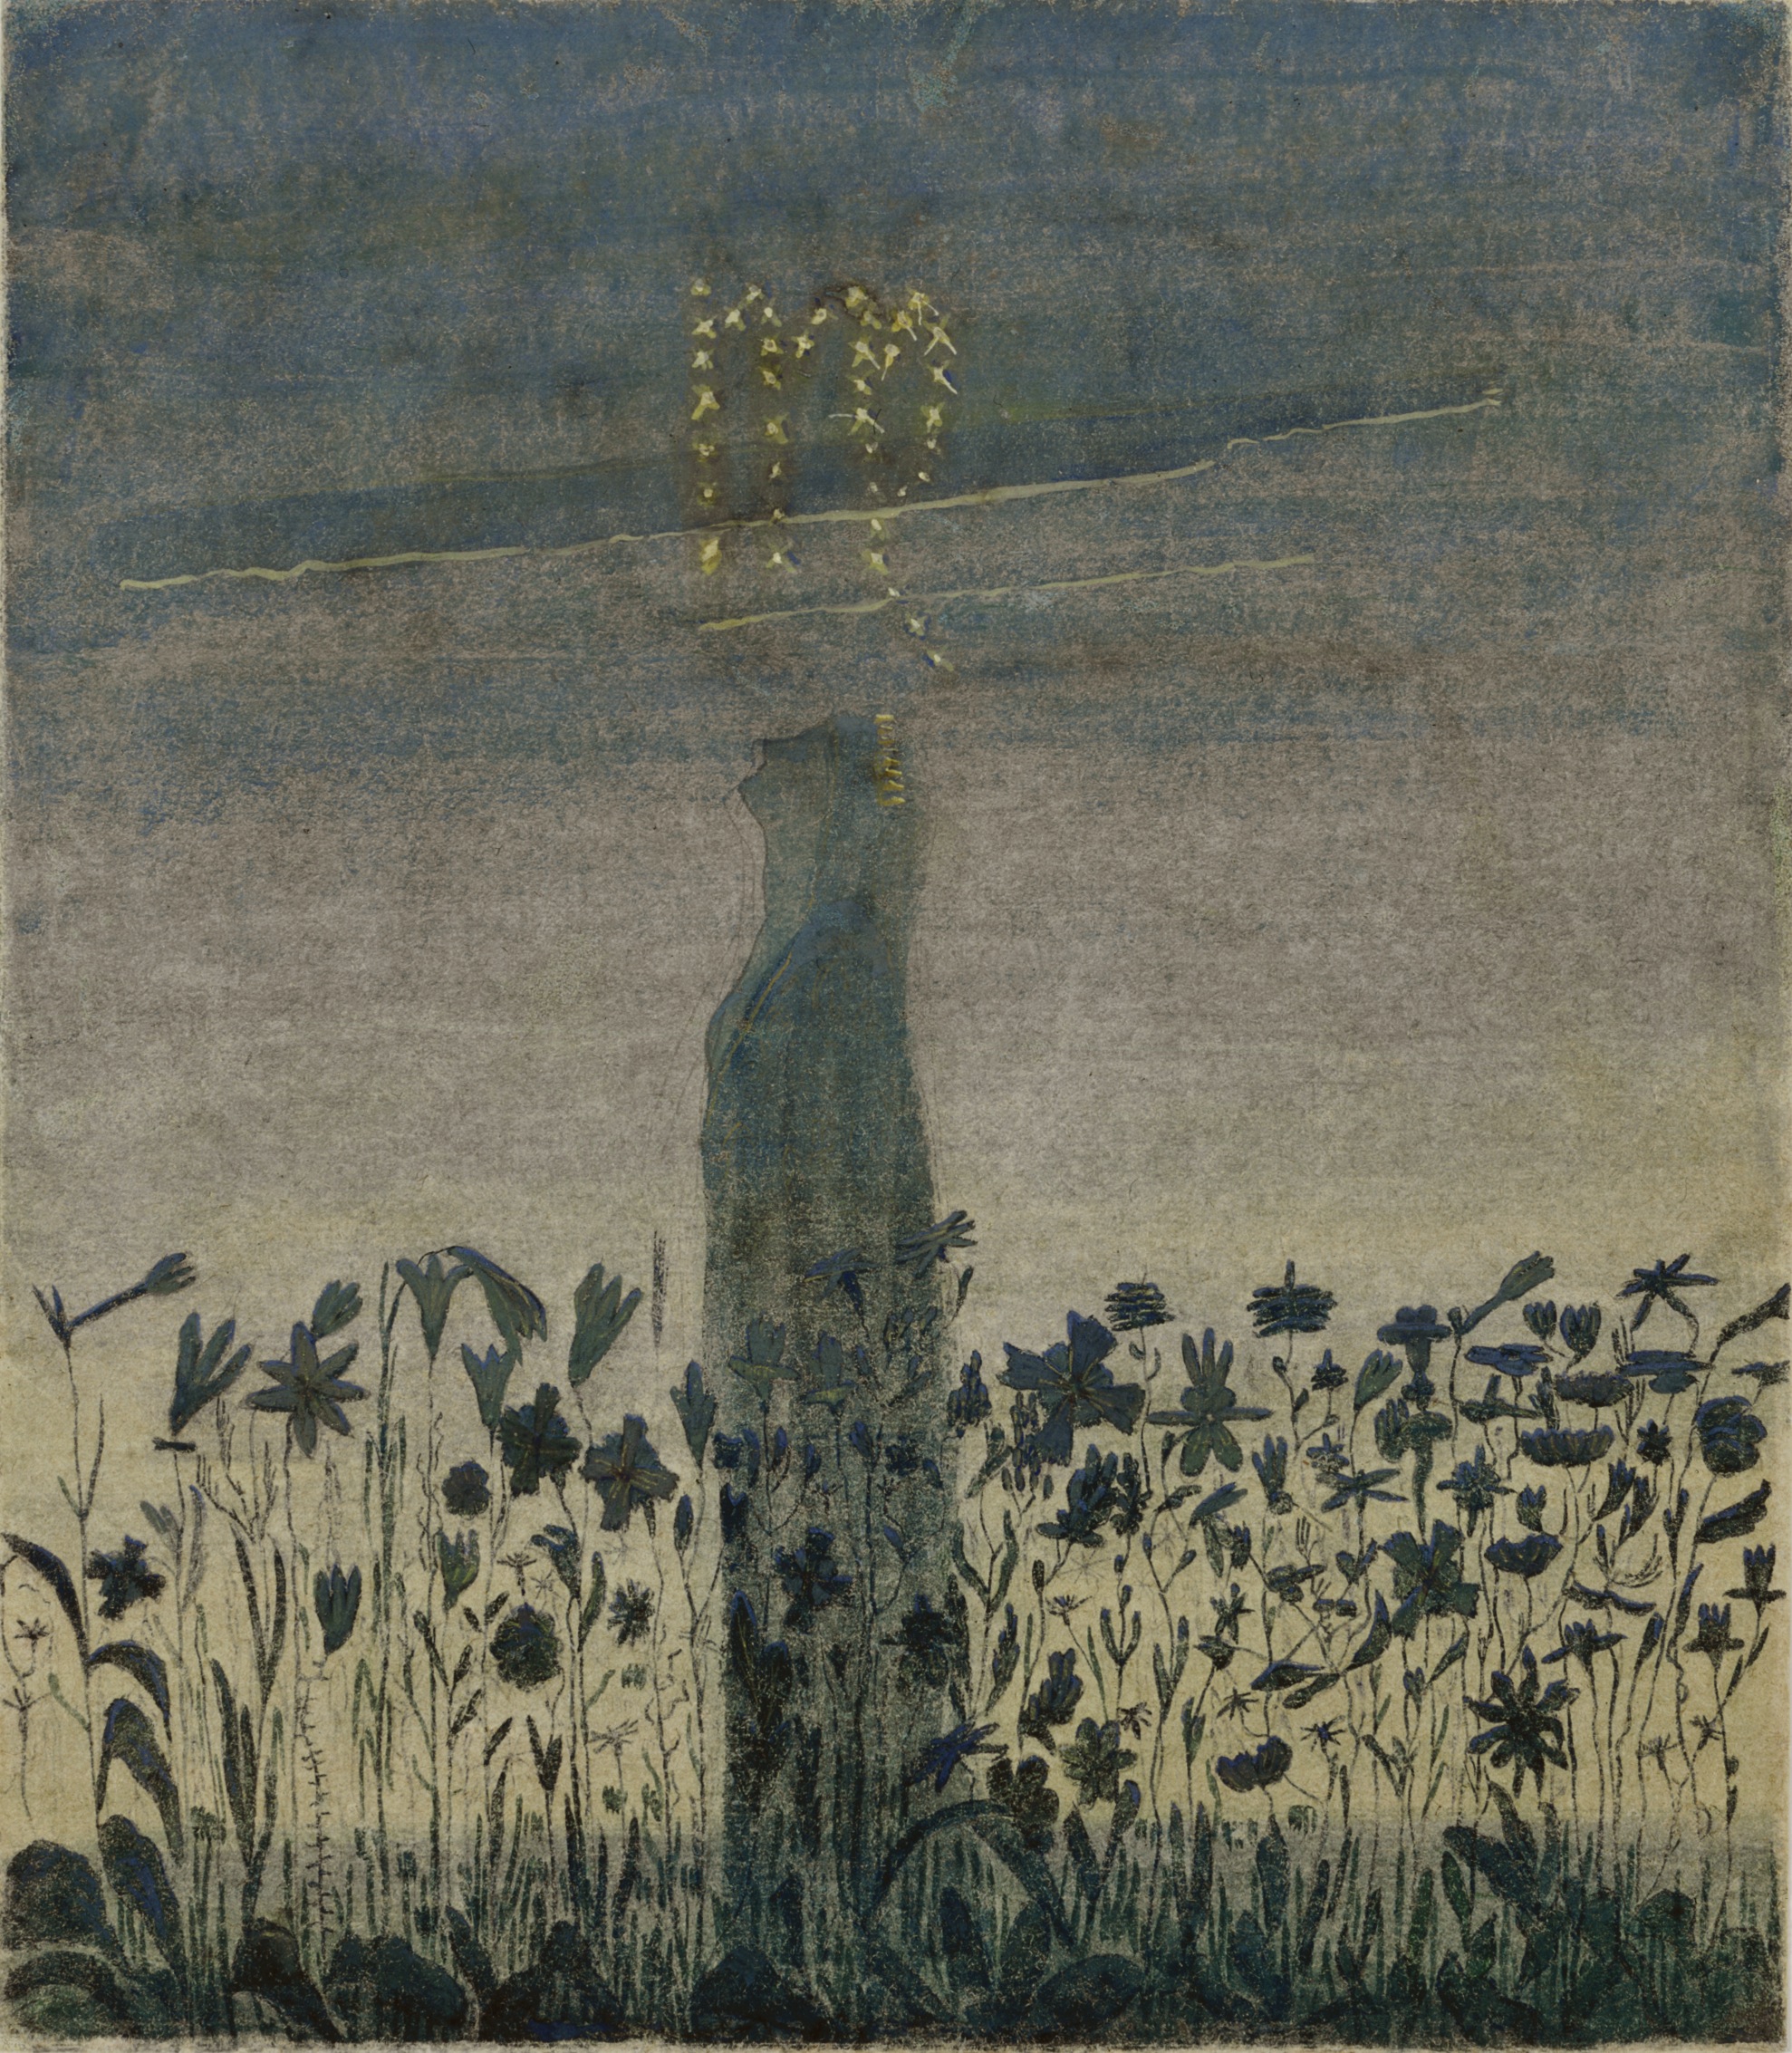 太陽經過處女座 by Mikalojus Konstantinas Čiurlionis - 1906 年 - 35.6 x 31.3 釐米 